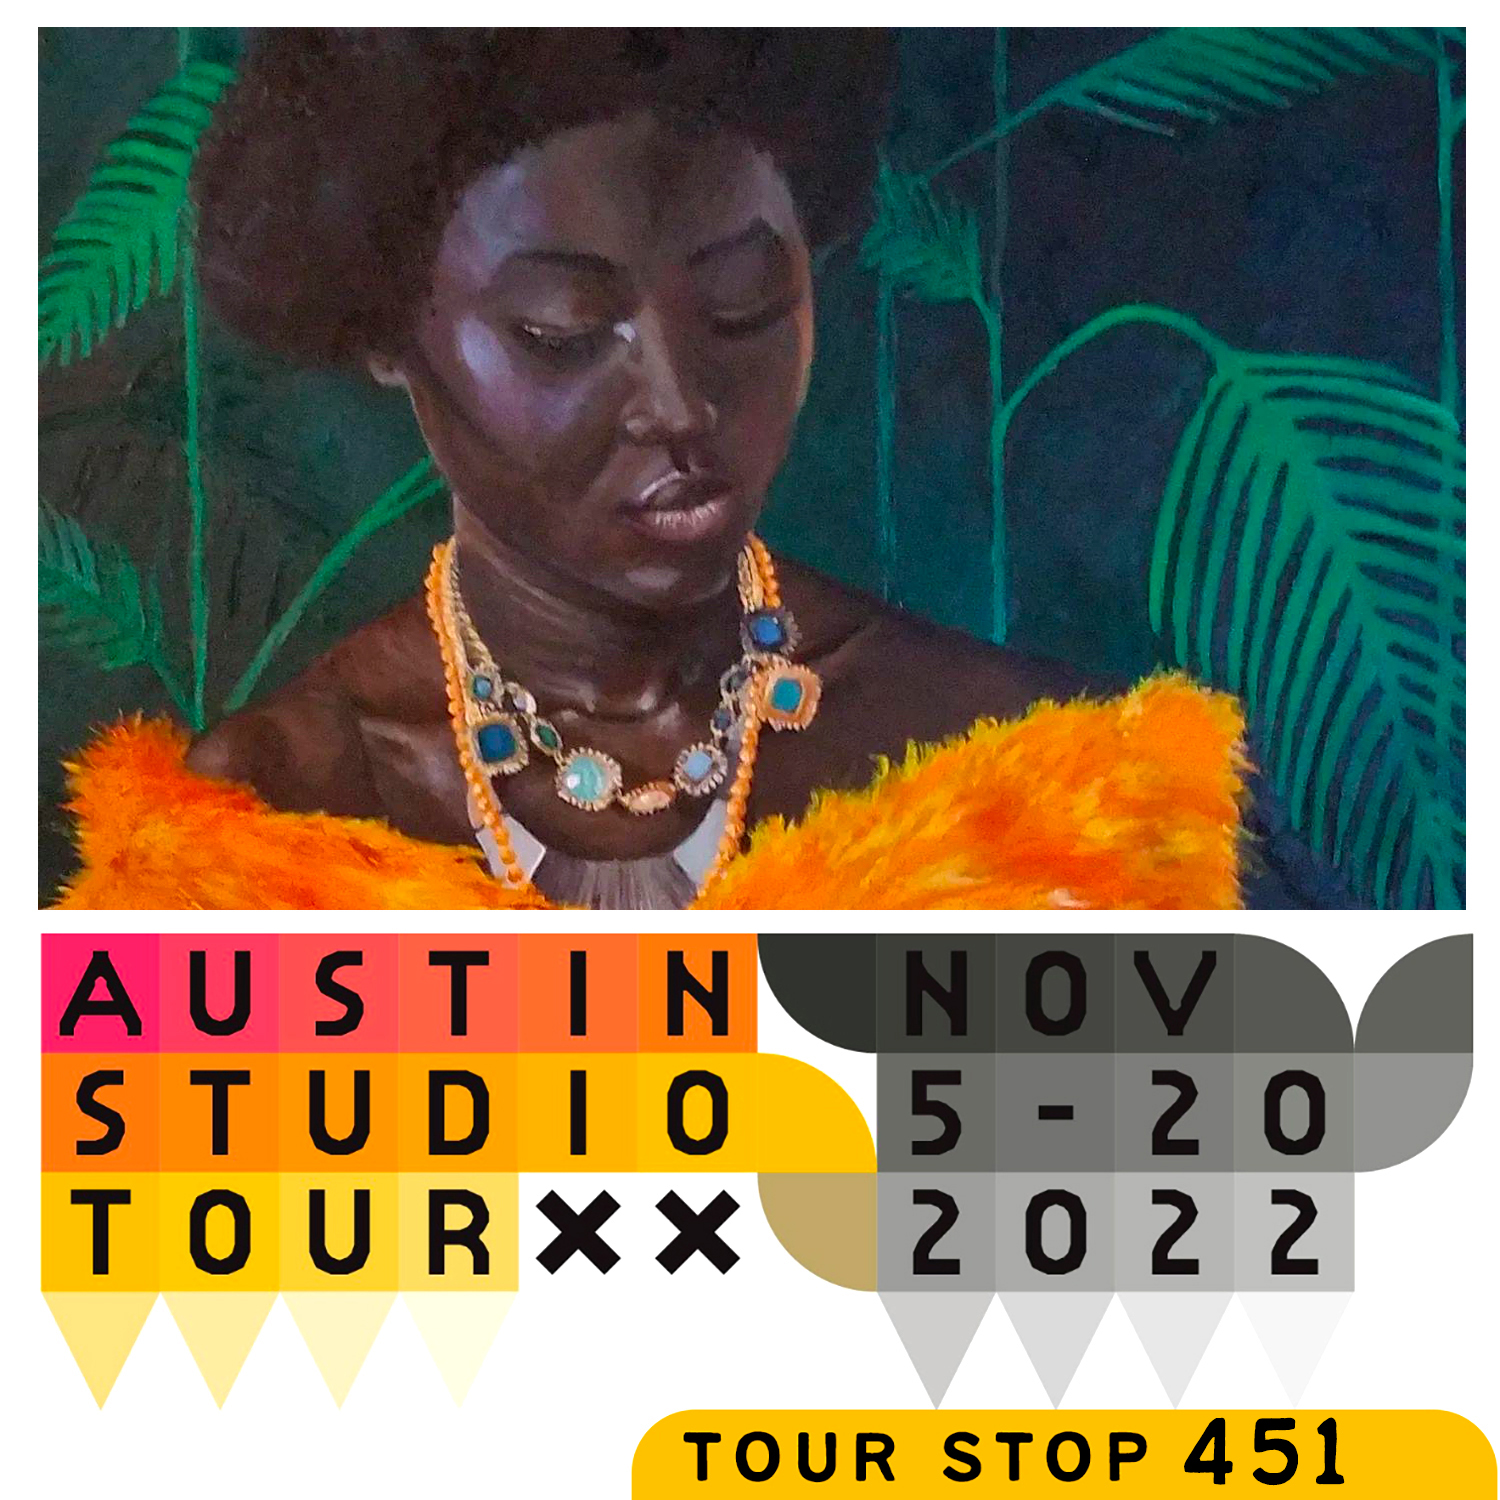 Austin Studio Tour graphic. Text reads, "Austin Studio Tour November 5-20, 2022."